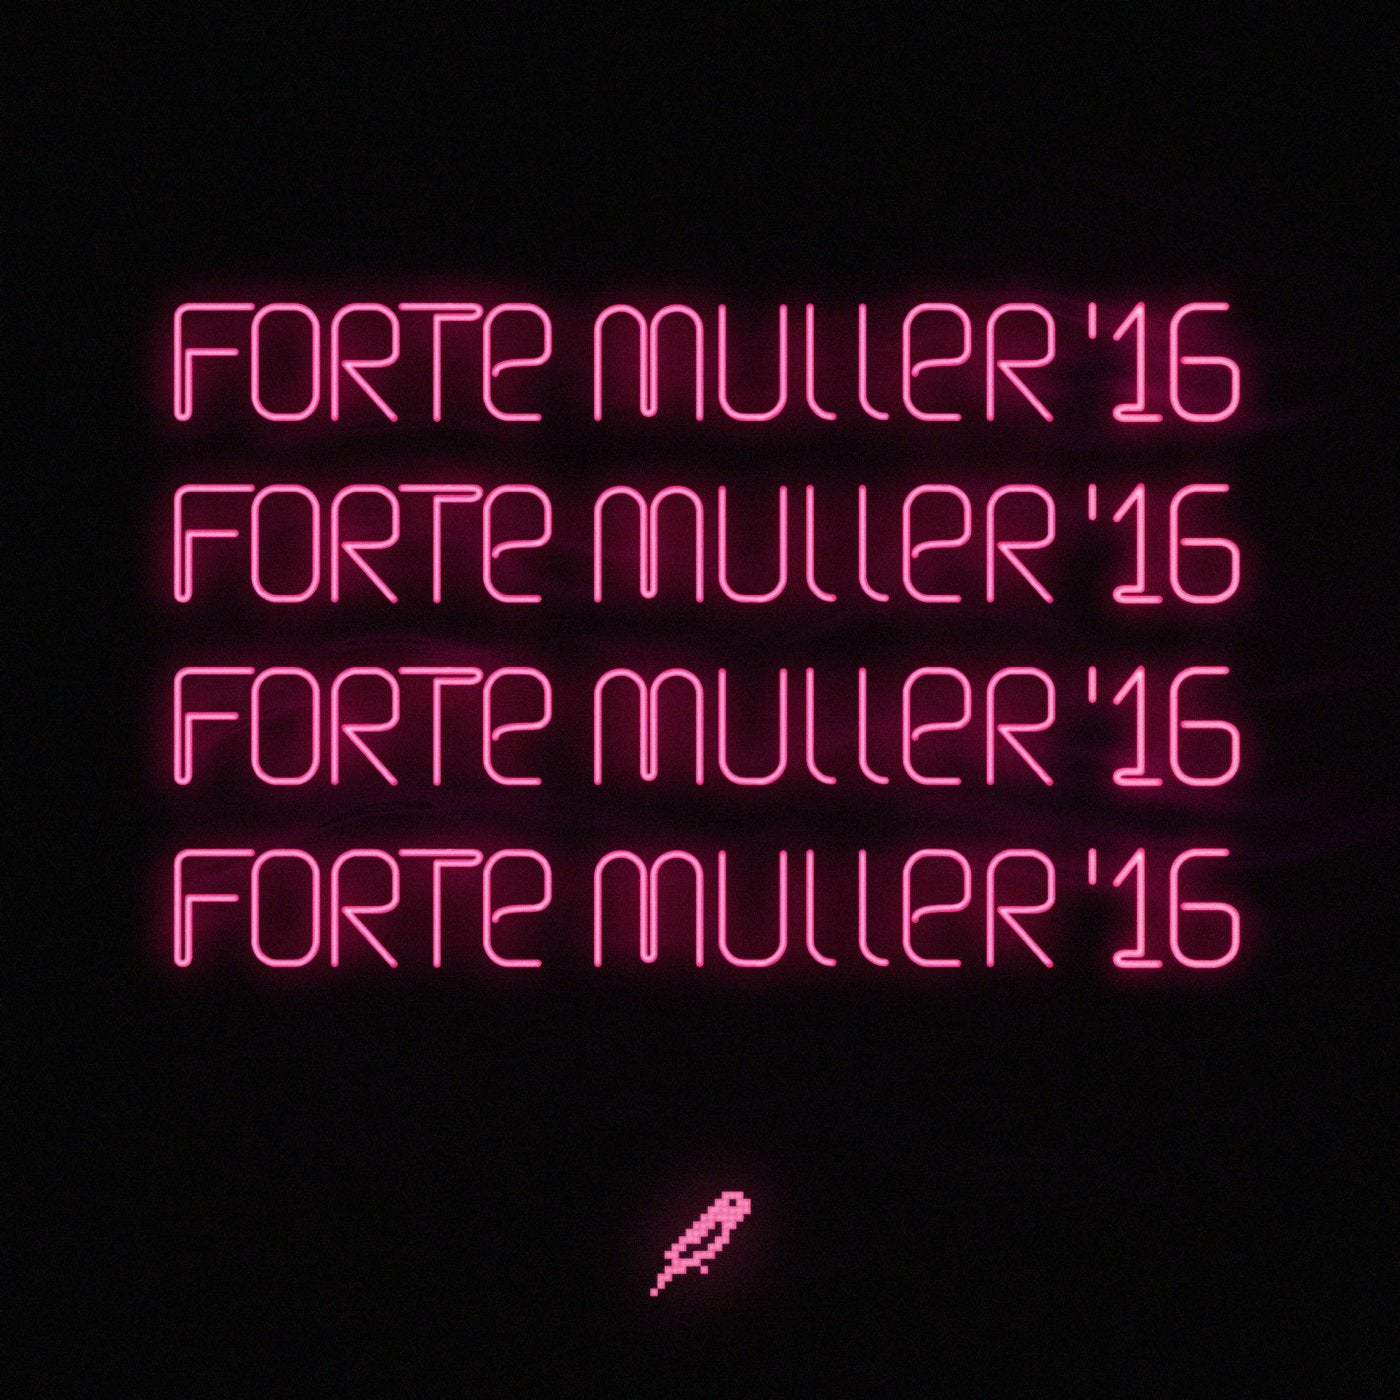 Forte Muller '16